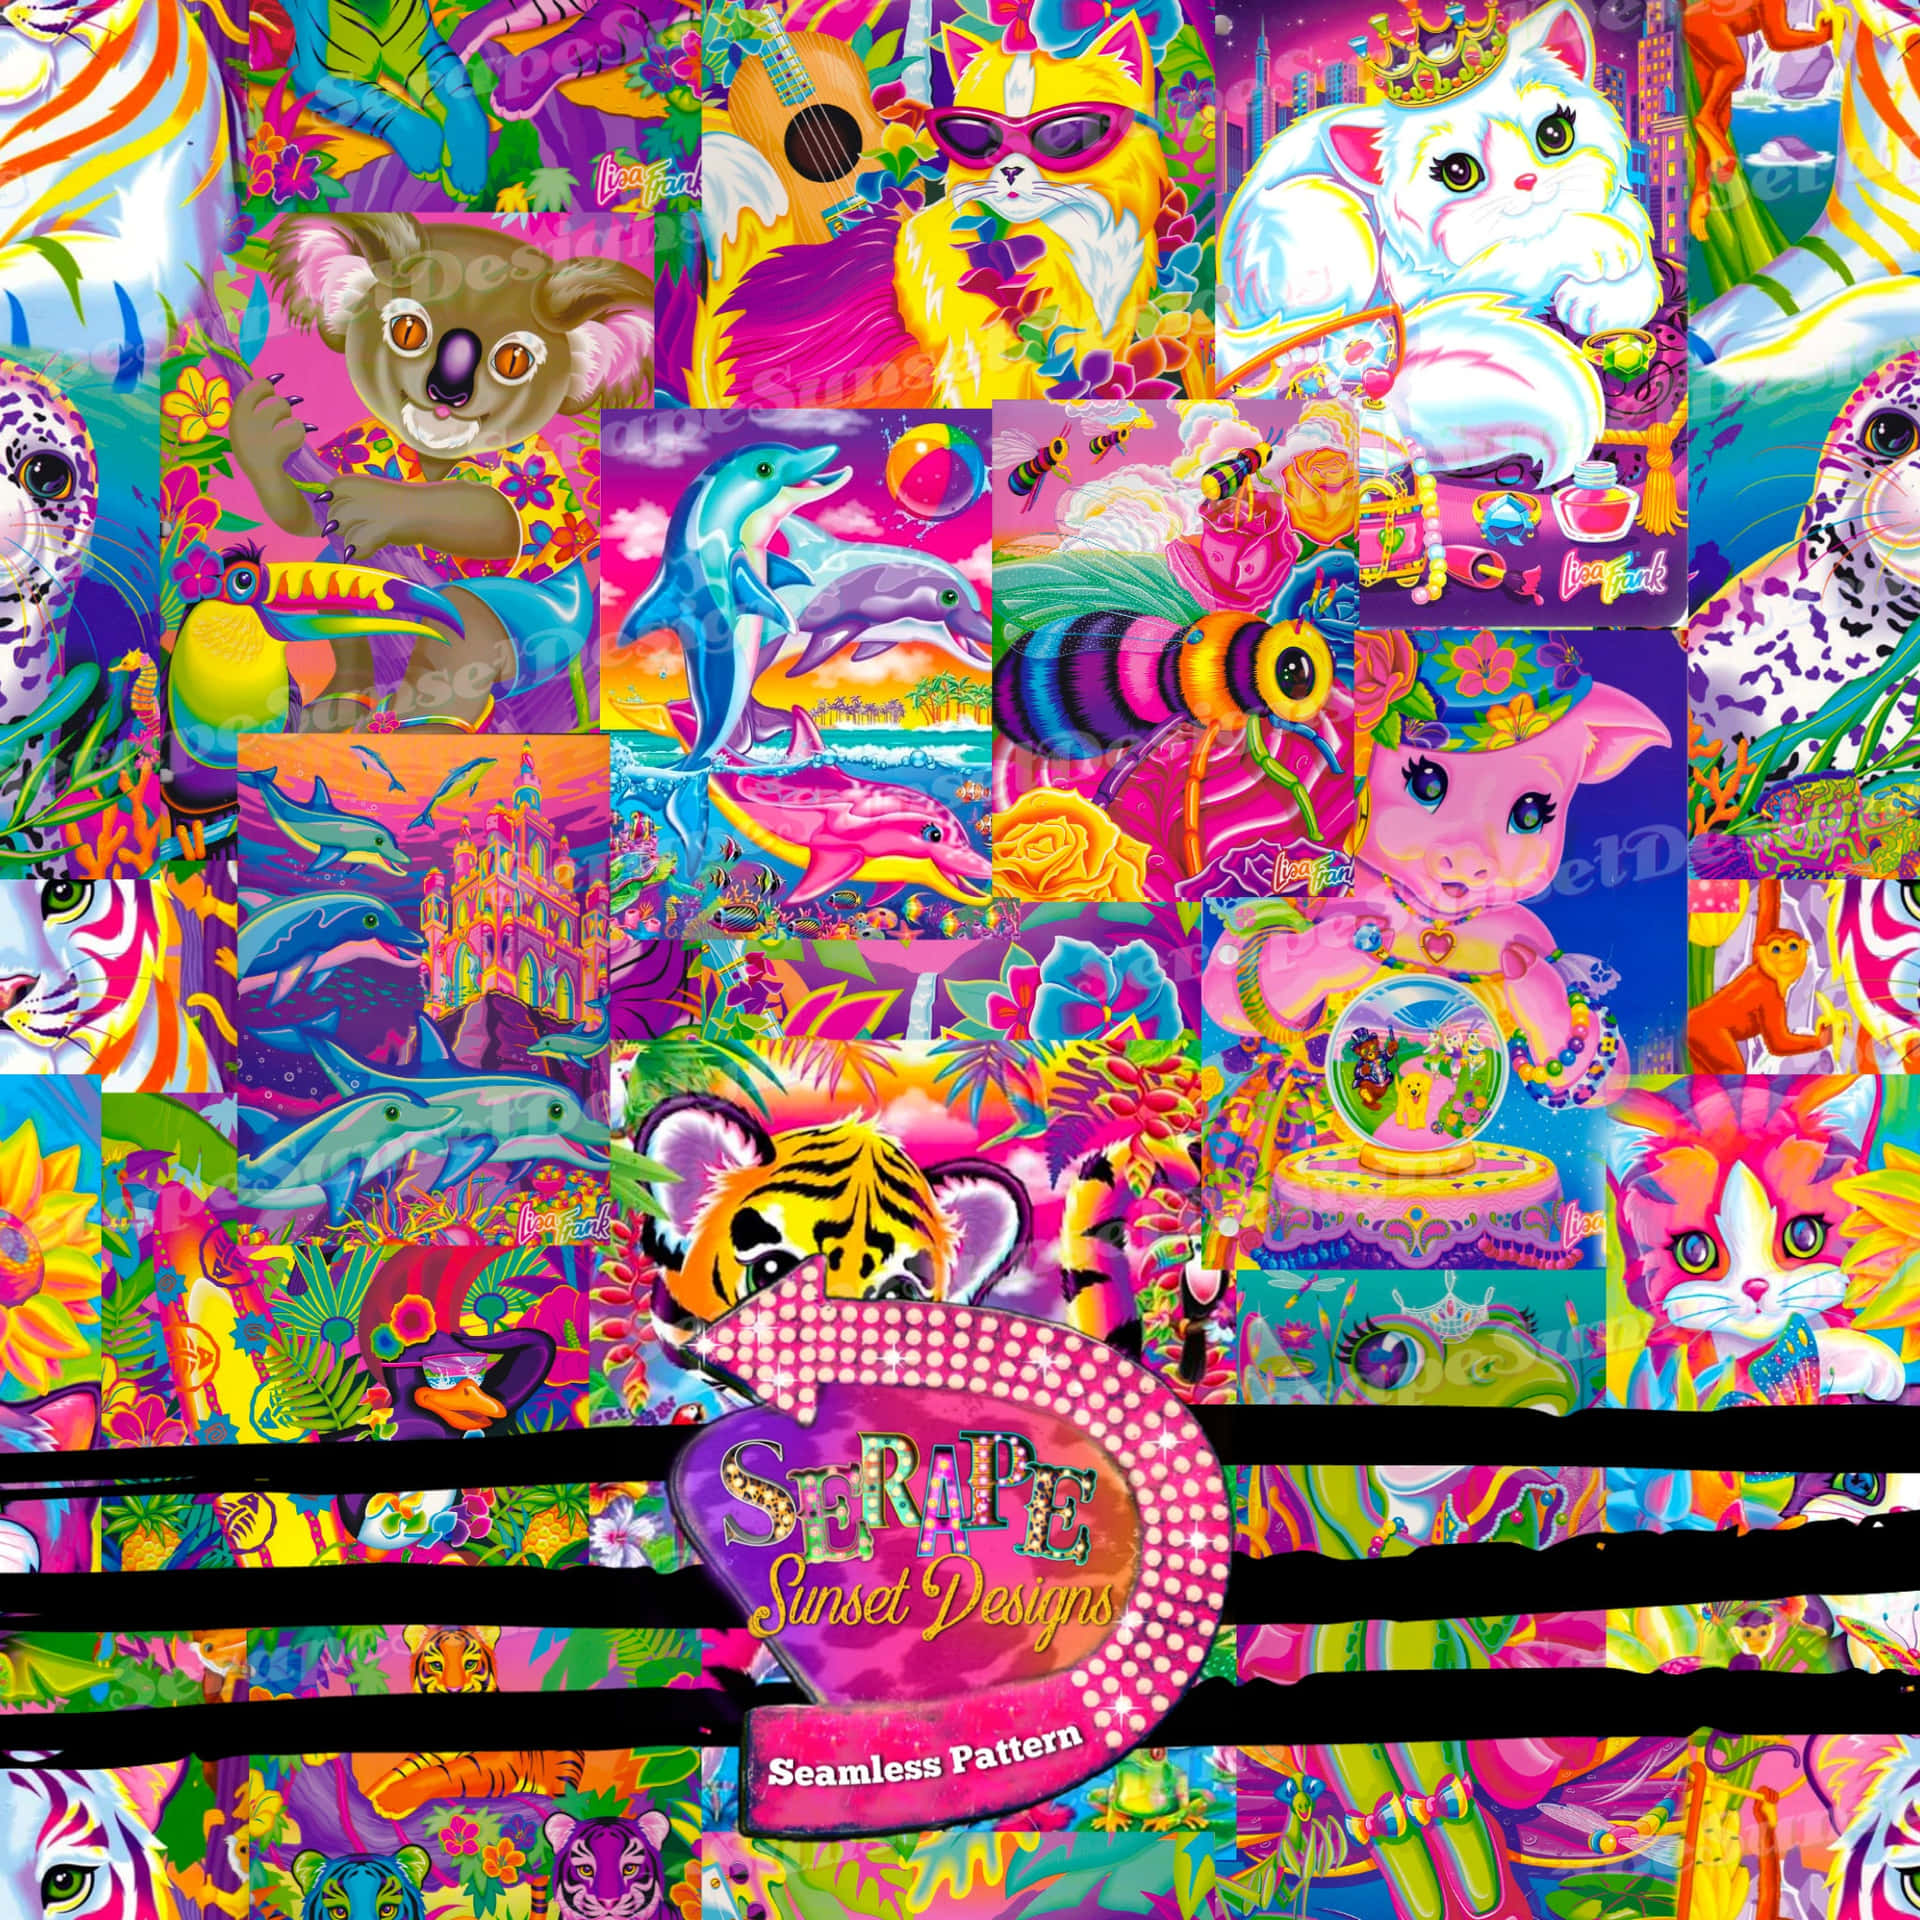 Et regnbue af farver bringer et glimt af glæde til verden med denne Lisa Frank Unicorn. Wallpaper